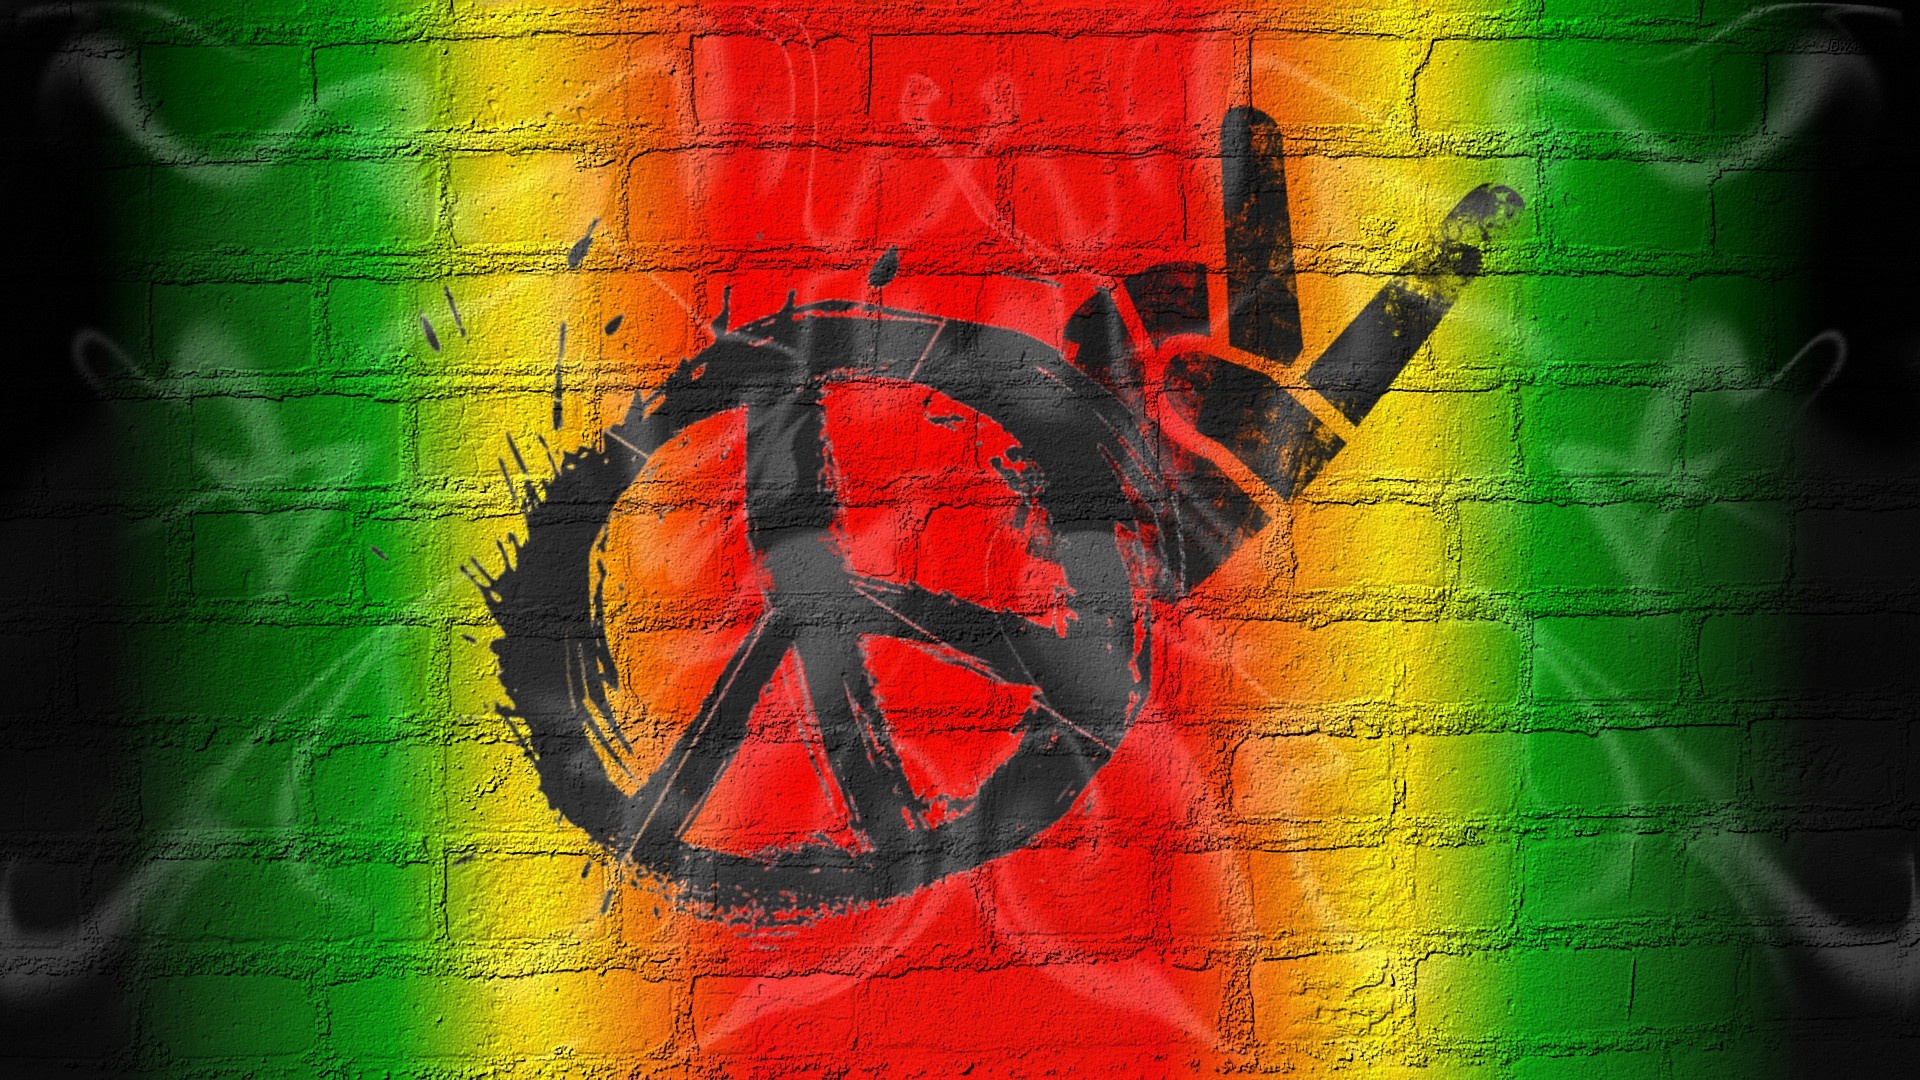 Peace Love, Graffiti Bricks Wallpaper, 1920x1080 Full HD Desktop